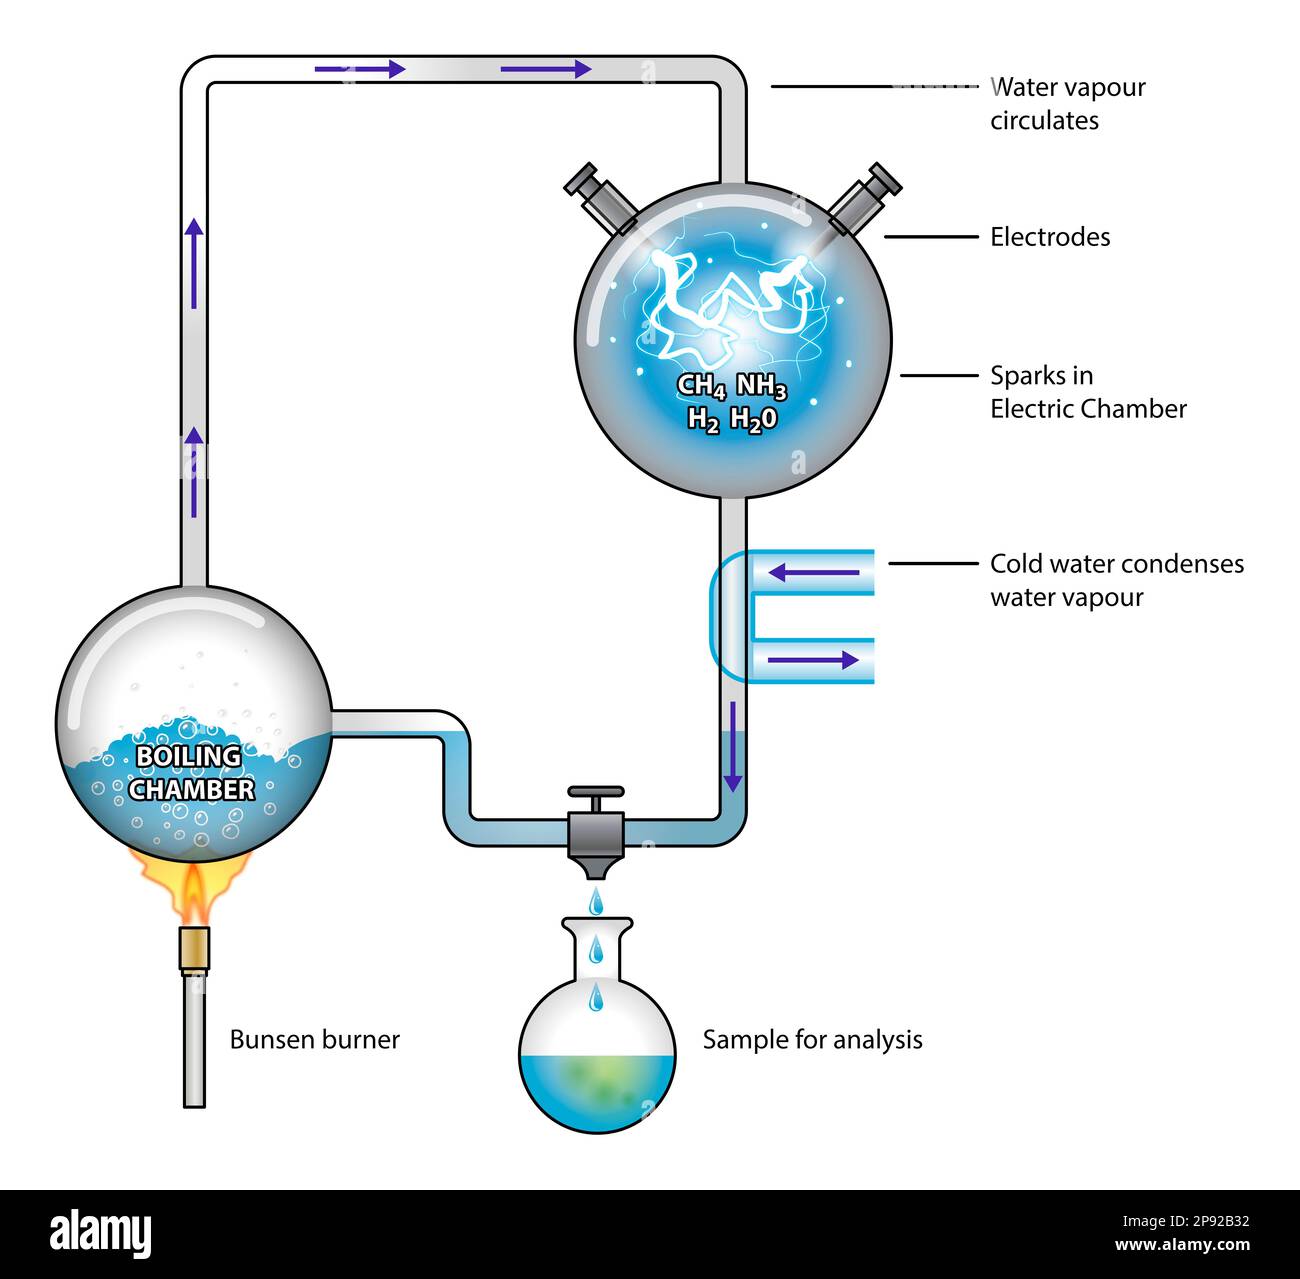 Diagramme illustrant l'expérience de chimie Miller-Urey expérience que les conditions simulées sont considérées comme présentes dans l'atmosphère de la Terre prébiotique Banque D'Images